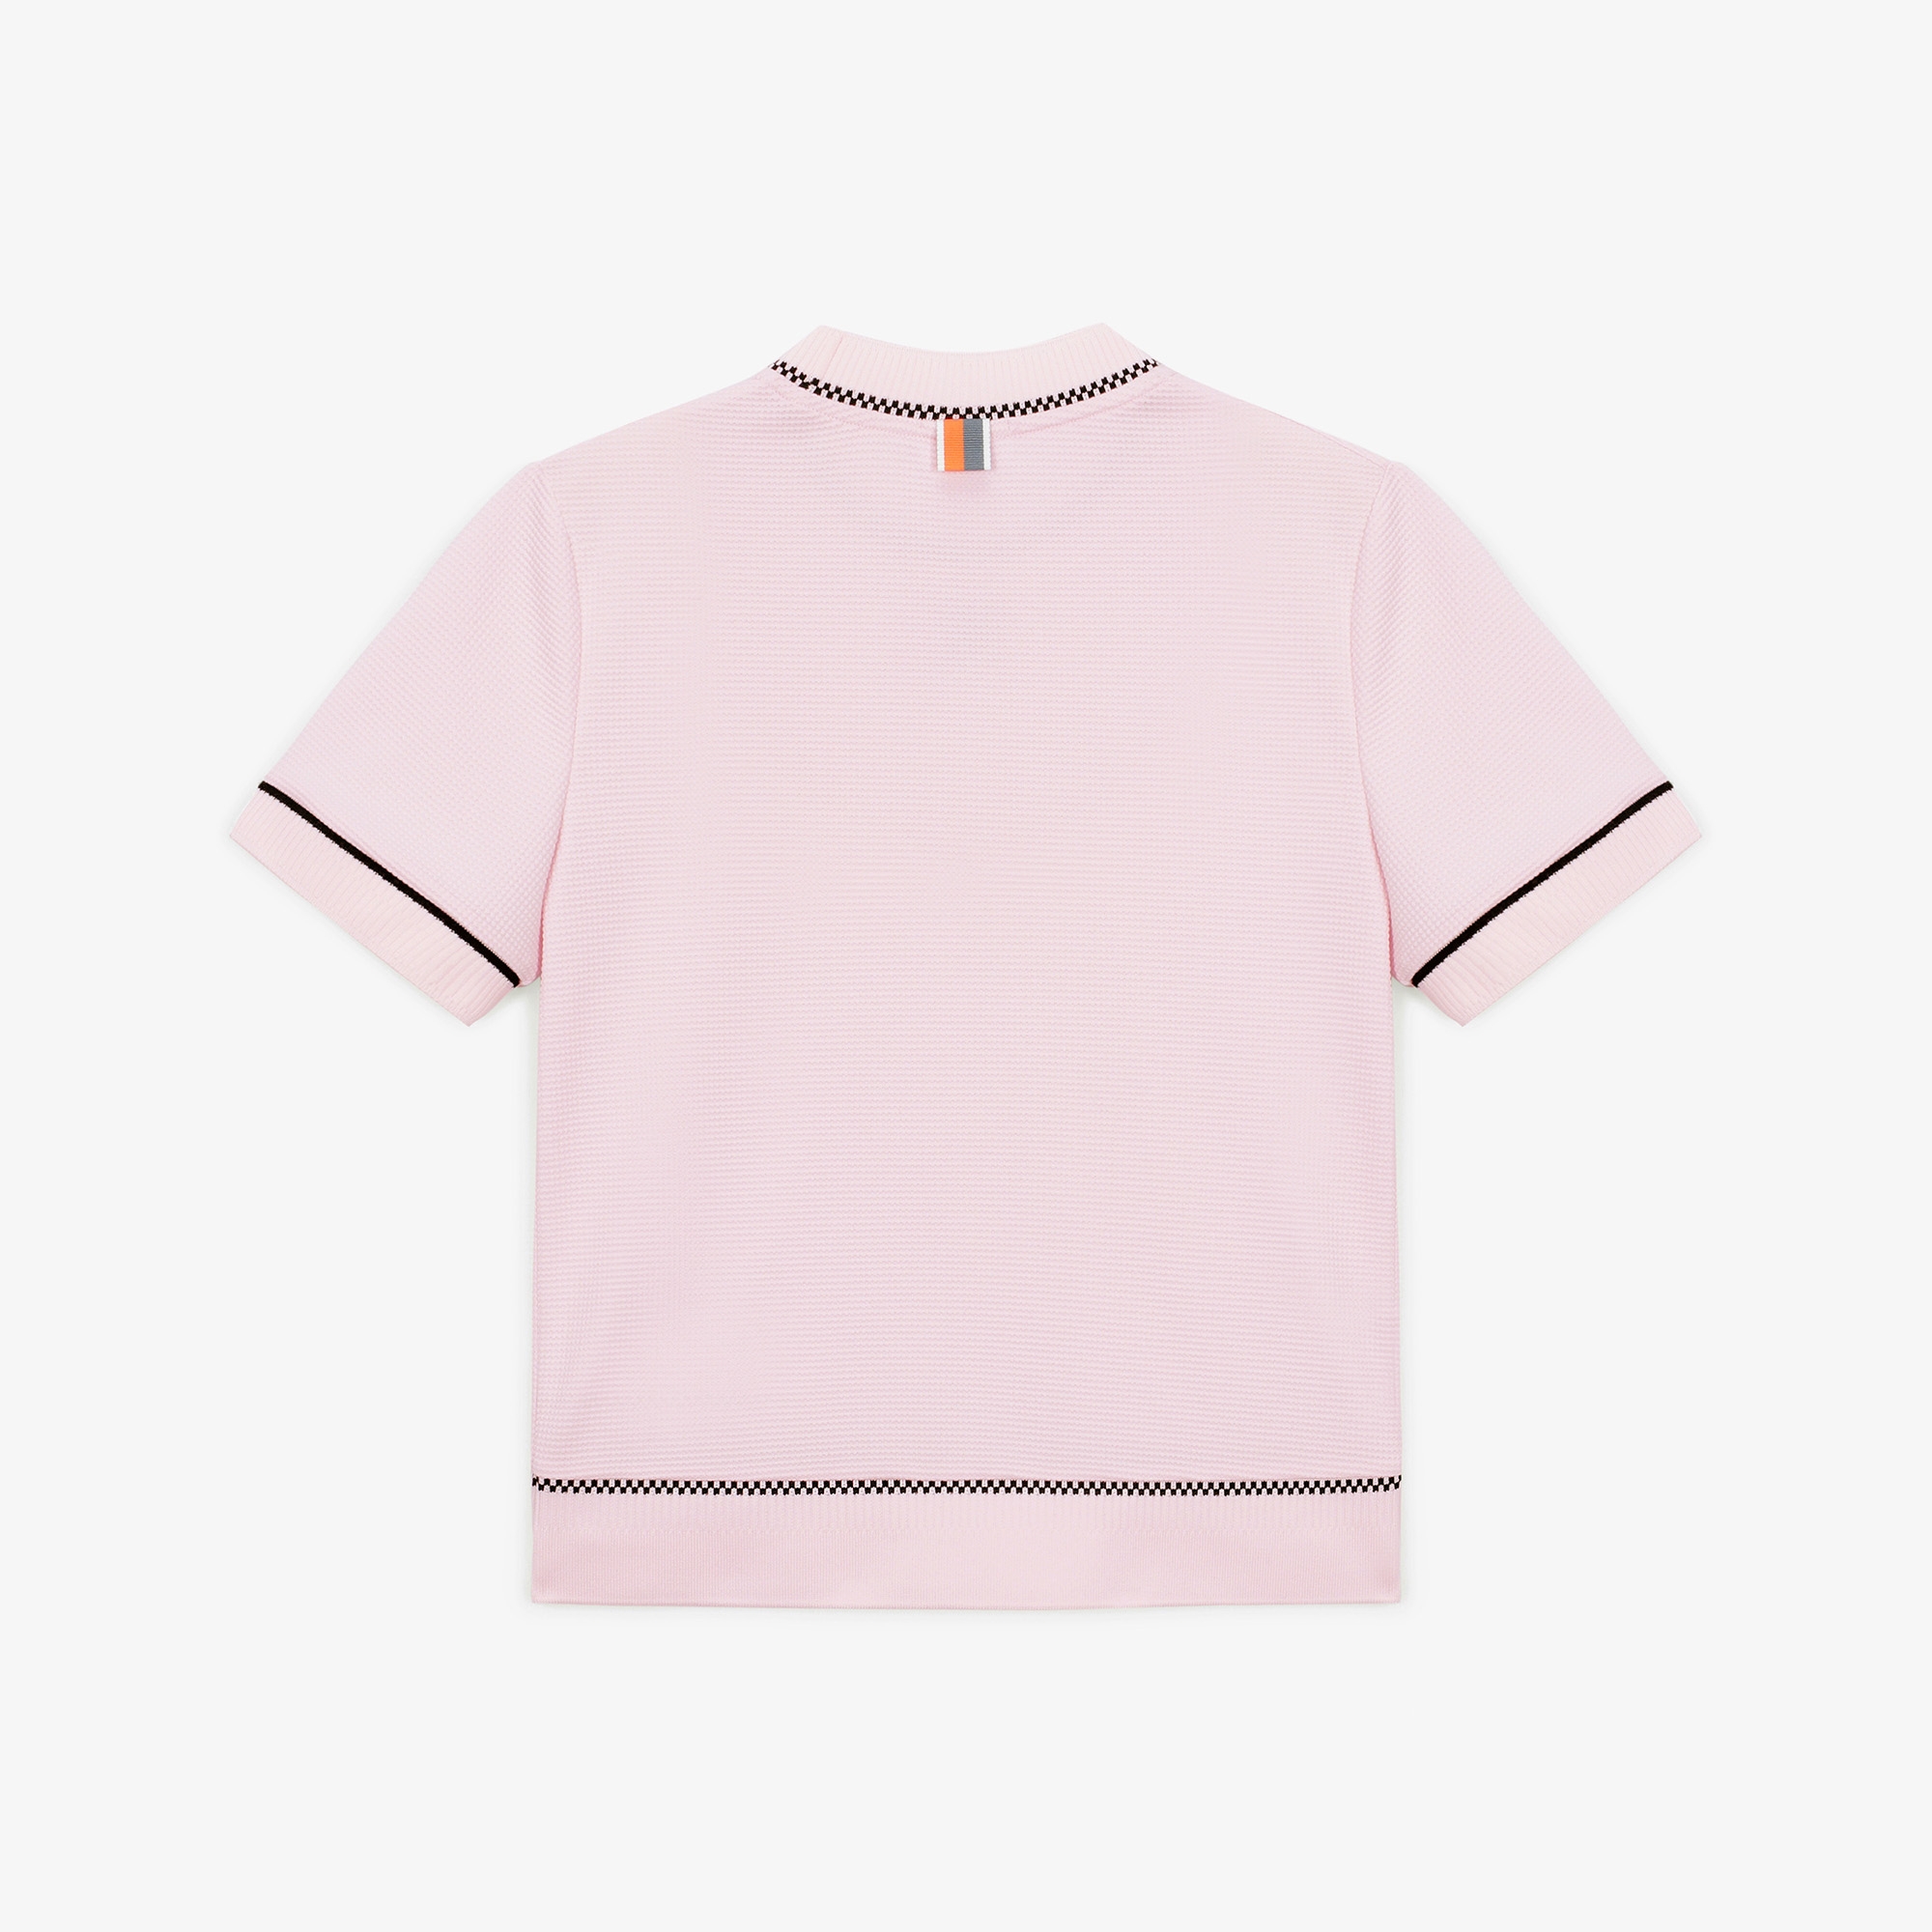 여성 SC 로고 반팔 티셔츠_라이트 핑크